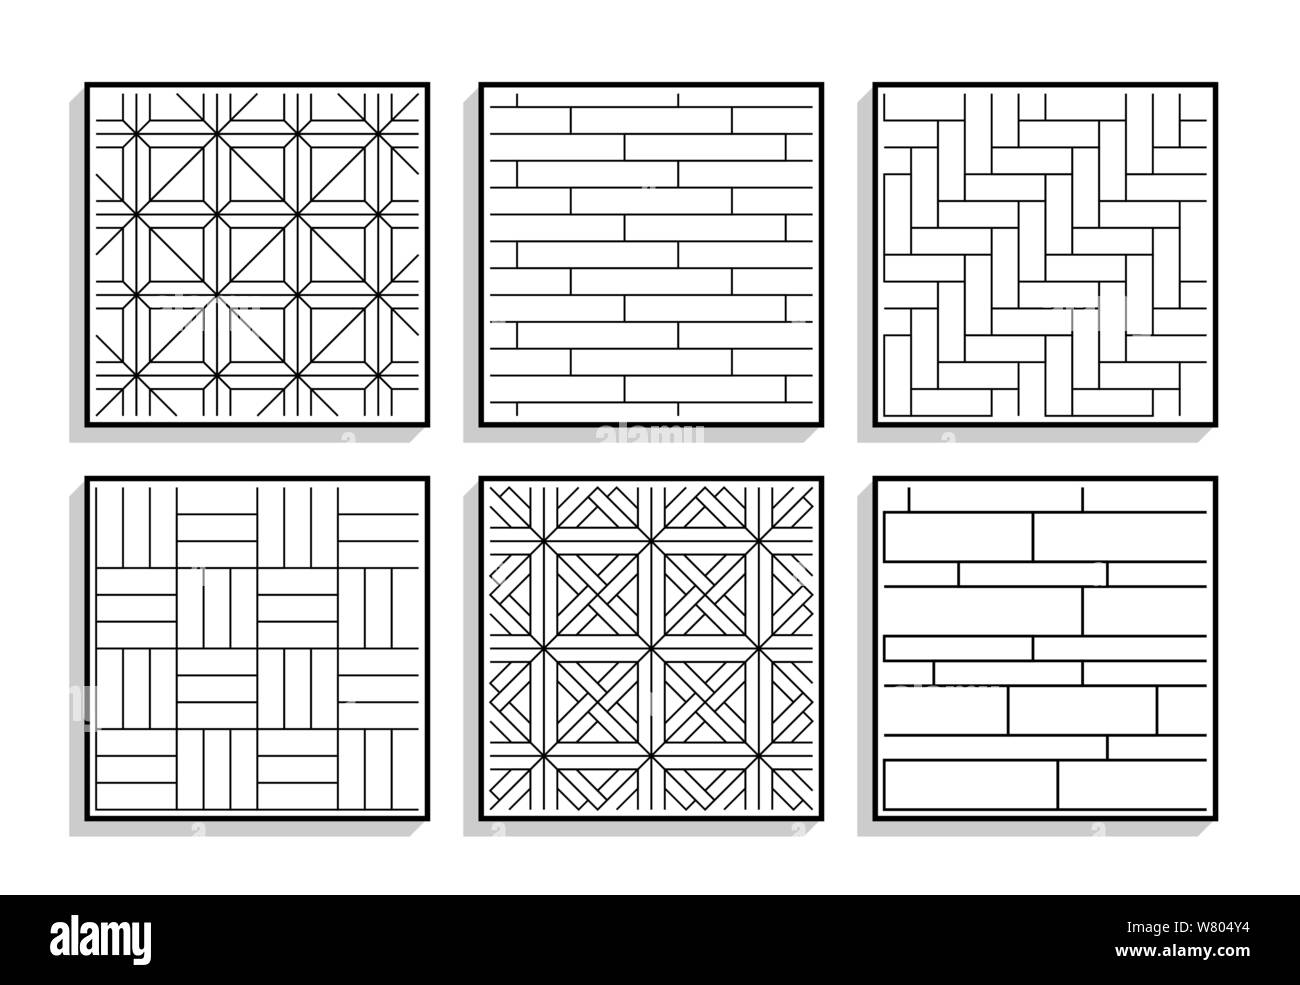 Conjunto de texturas de parquet sin fisuras. Gráfico en blanco y negro patrones de materiales de madera Ilustración del Vector